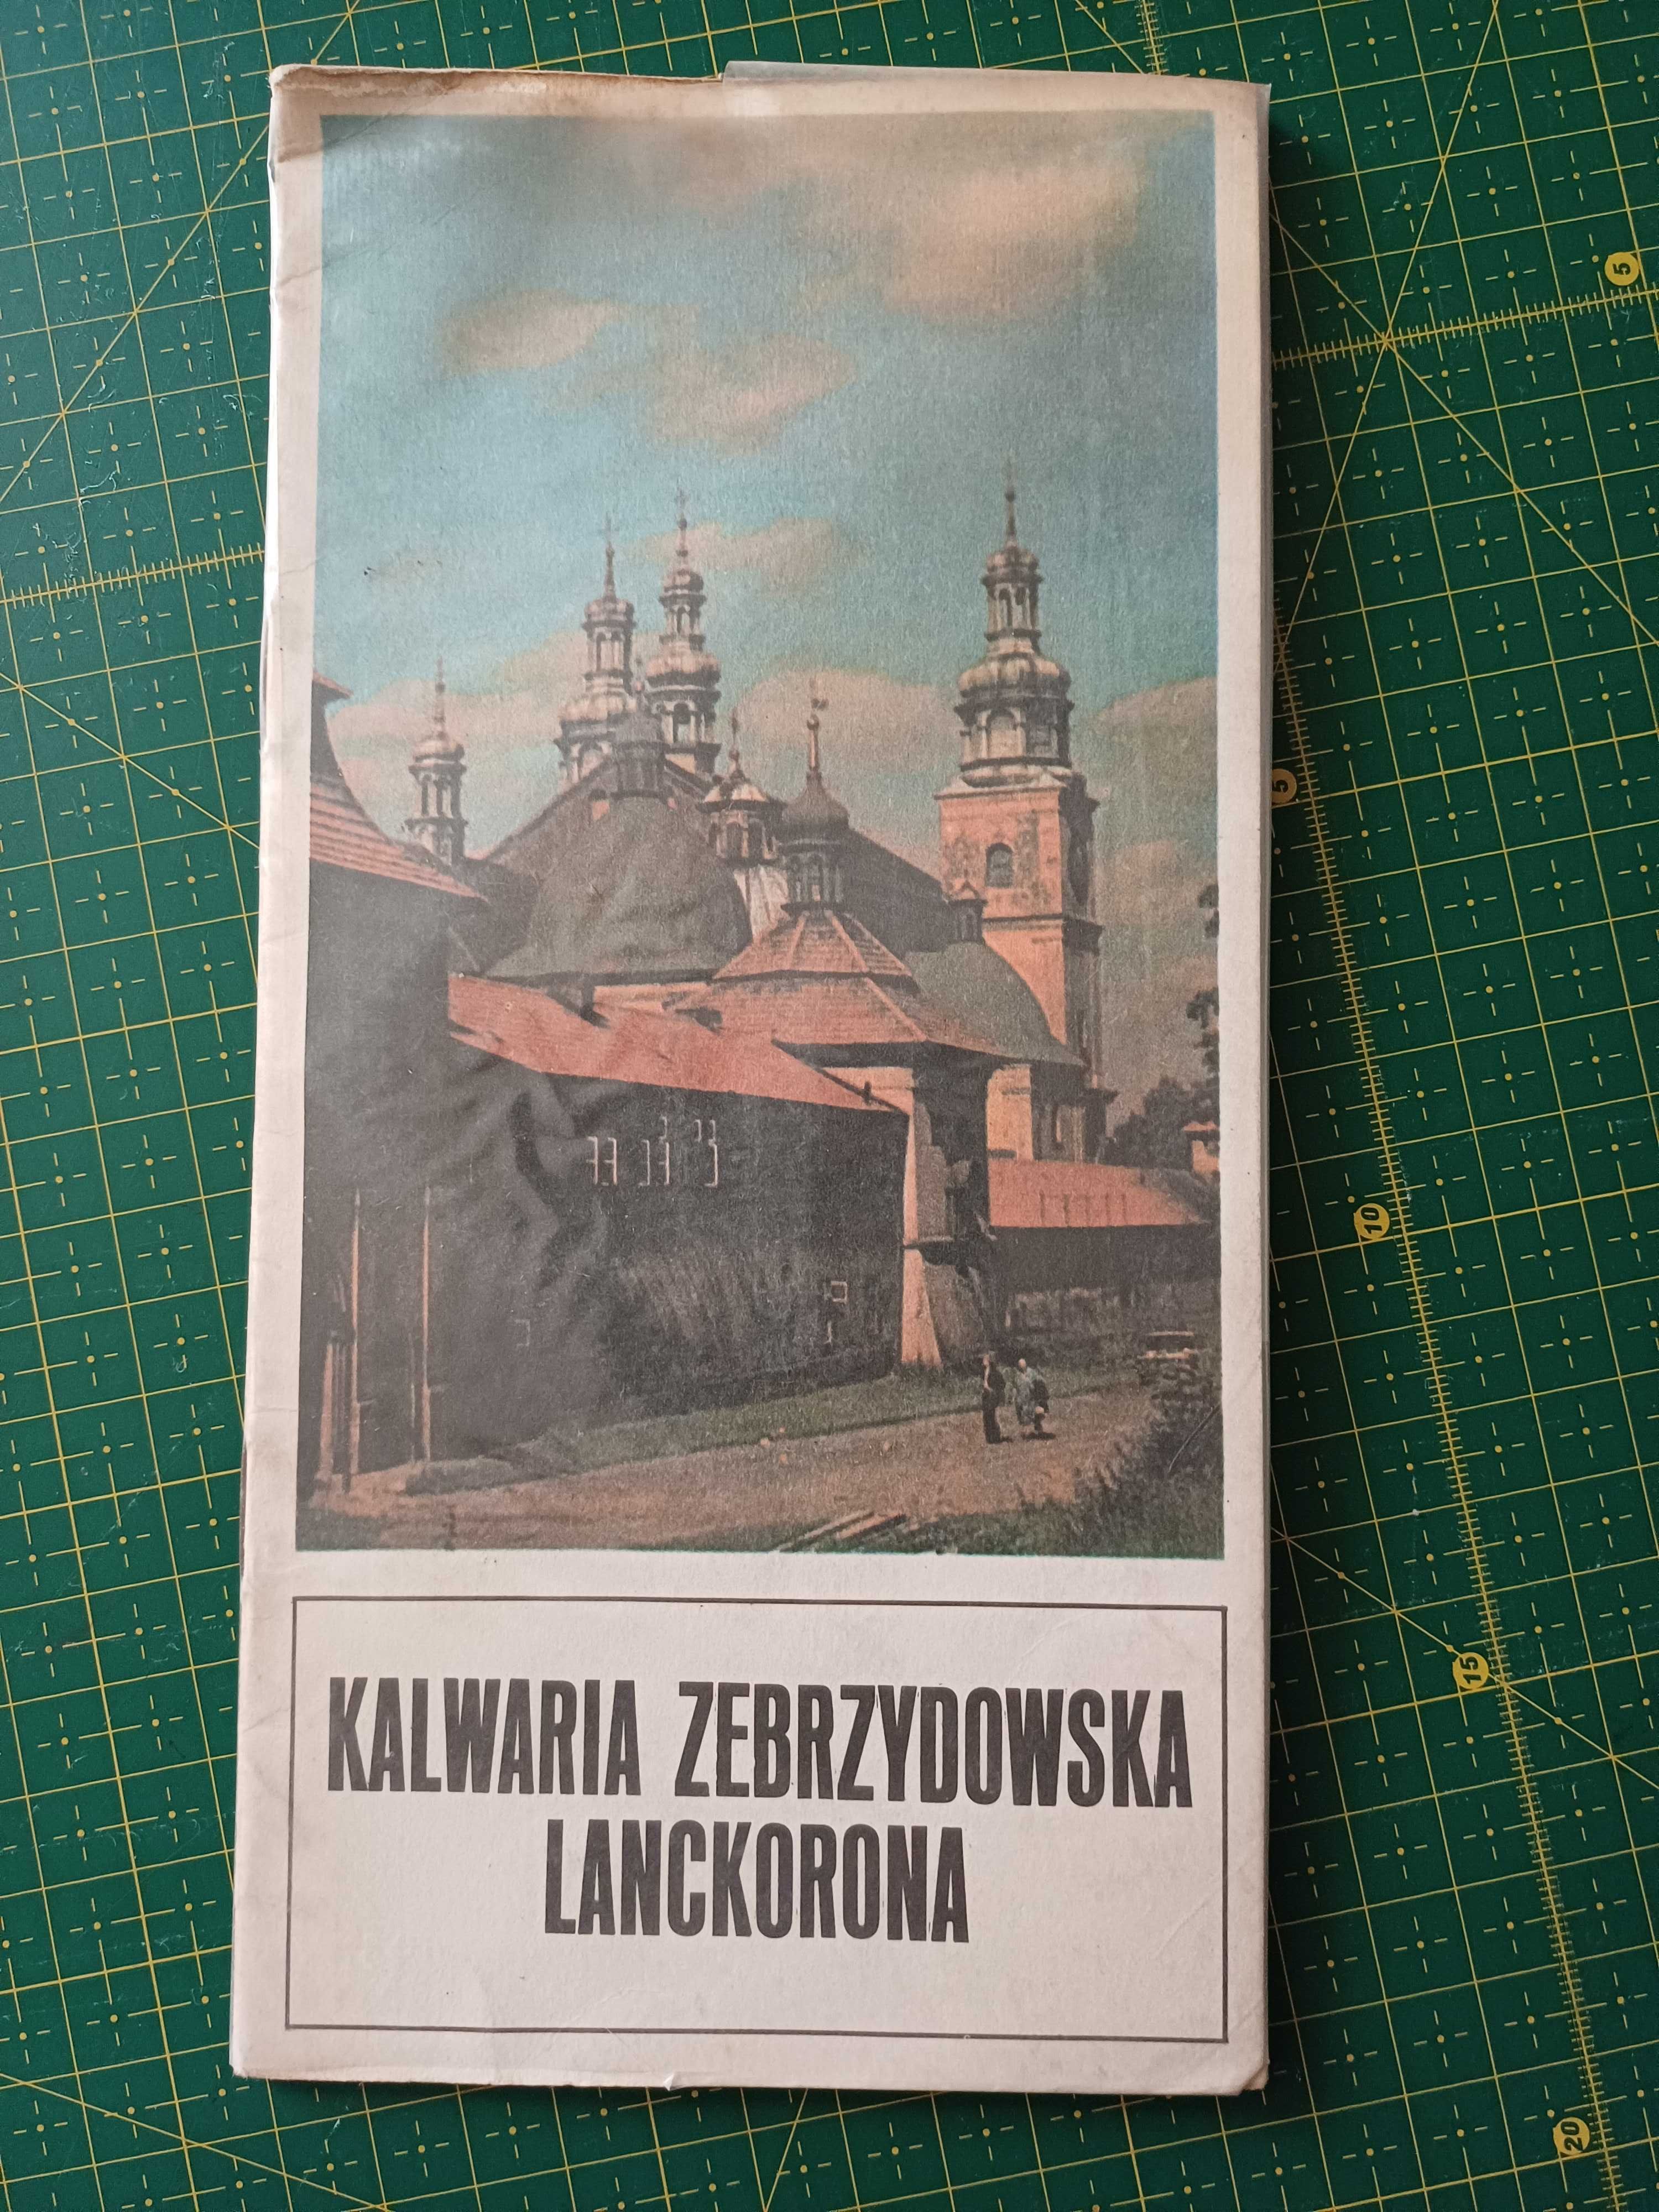 Kalwaria Zebrzydowska Lanckorona- Krzysztof Staszkiewicz